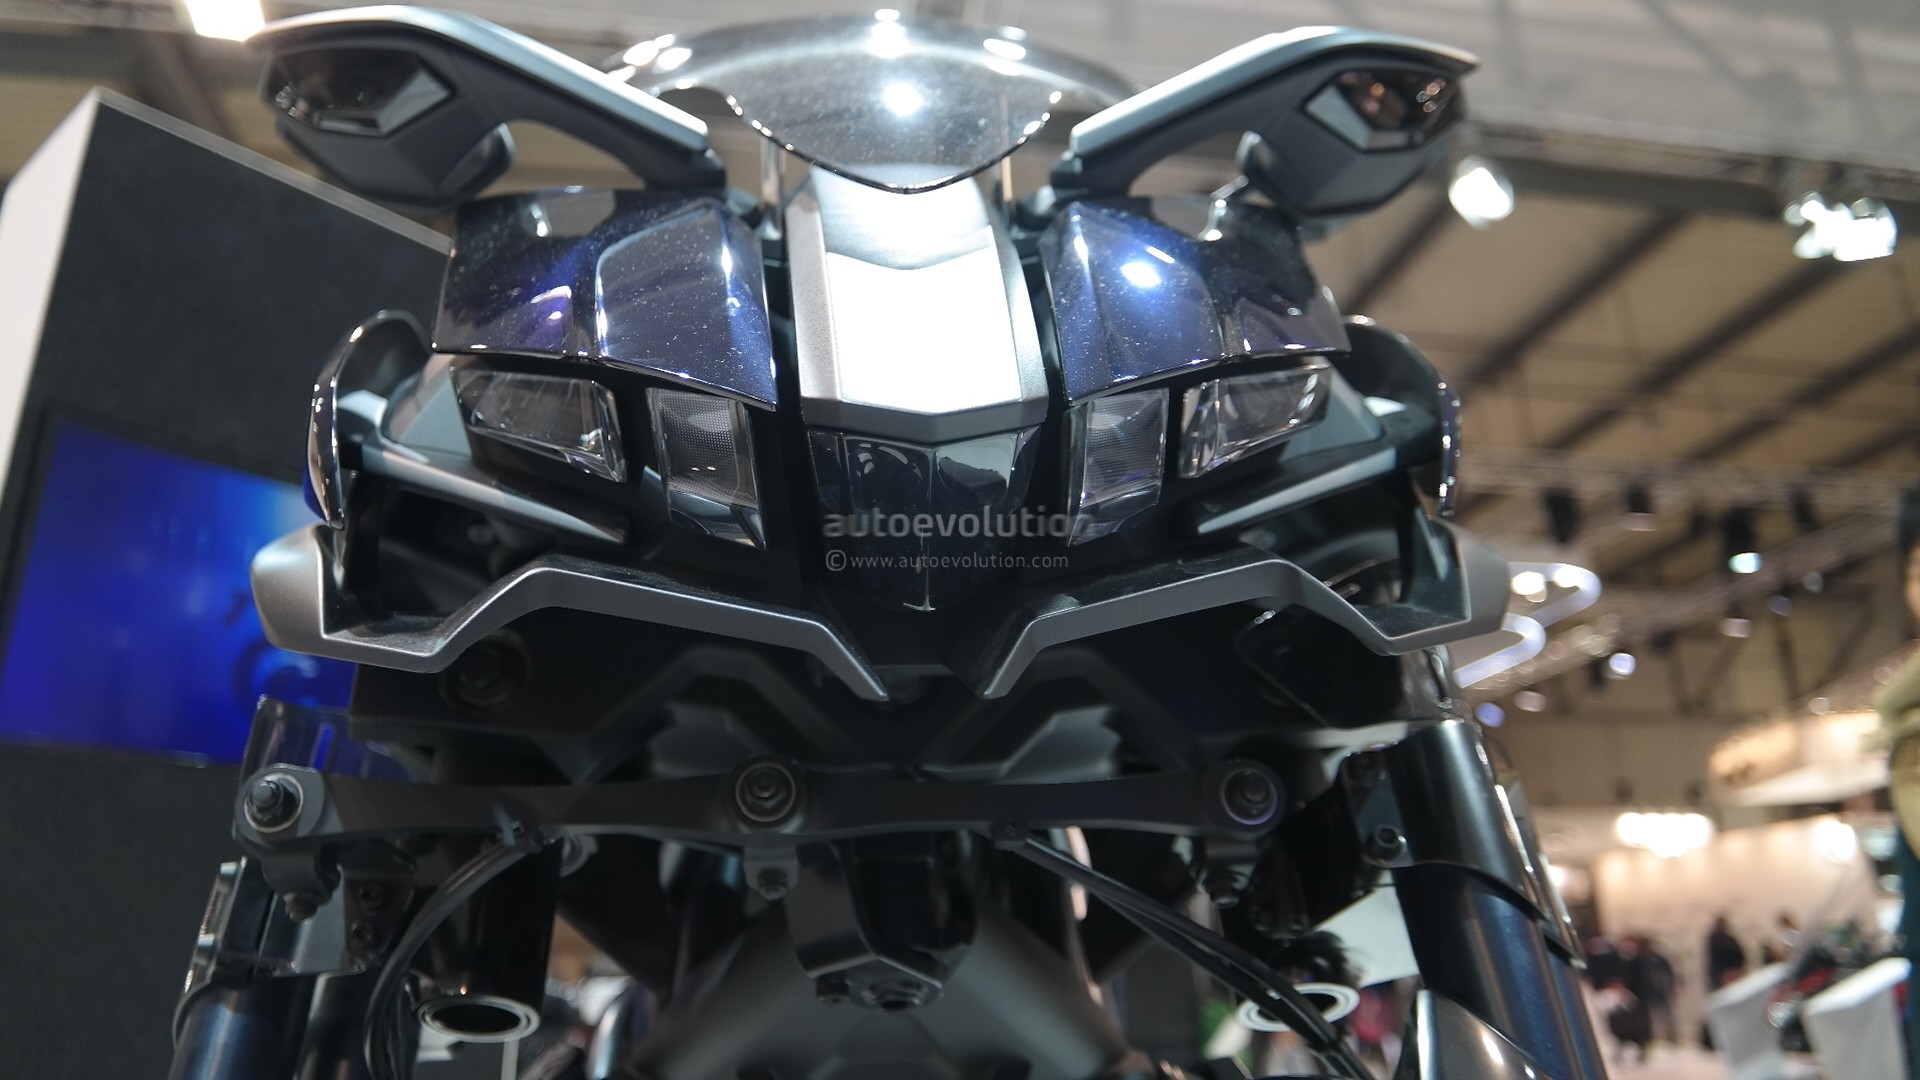 Yamaha Mwt 9 Leaning Trike Set To Enter Production Autoevolution